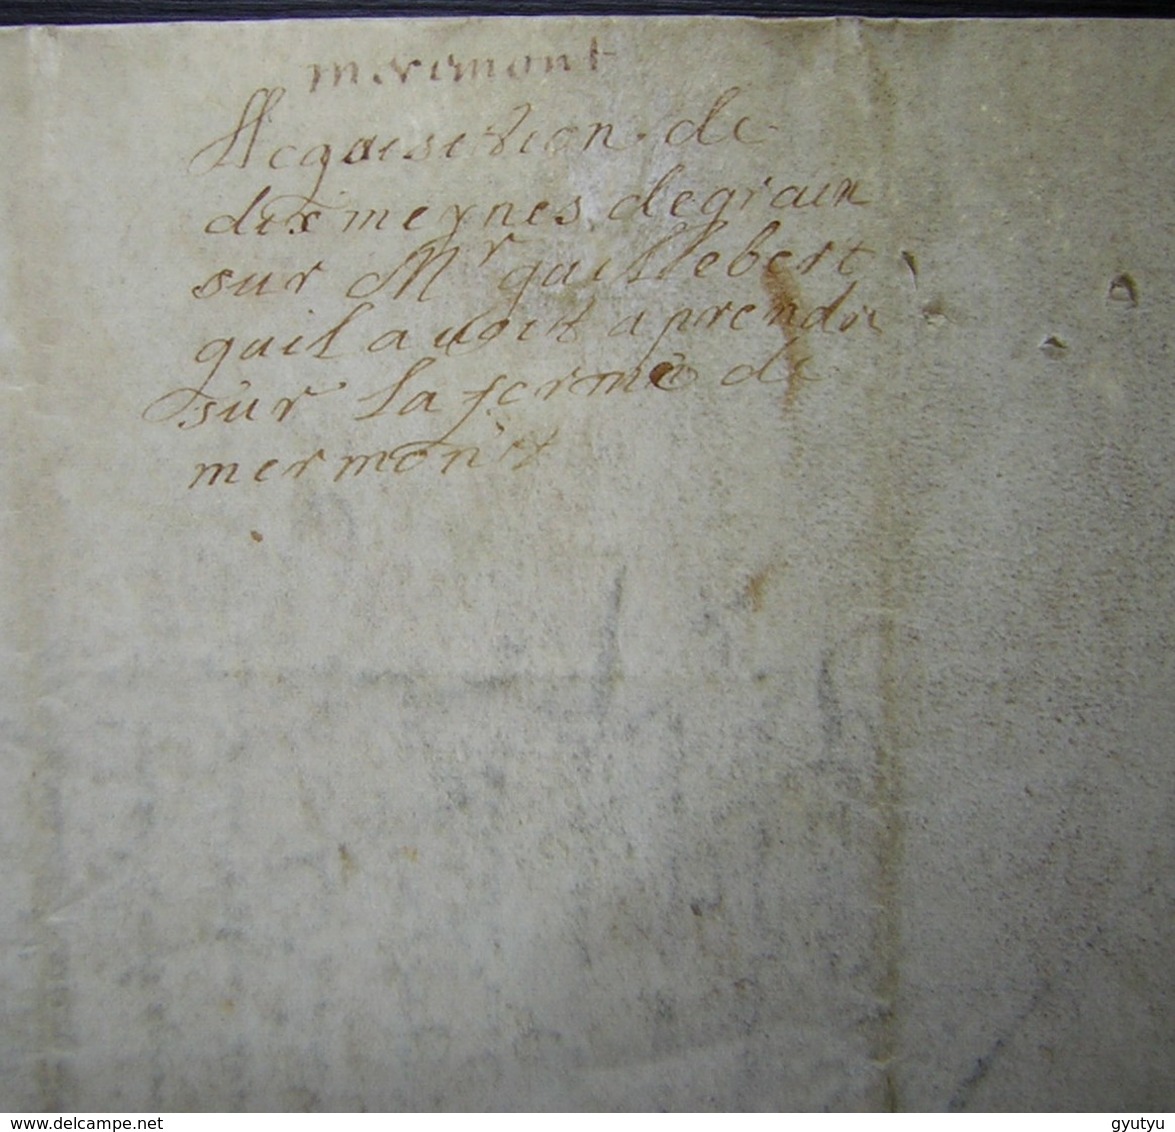 1659 Parchemin De Crépy (Oise) Acquisition De Dix Mines De Grains à Monsieur Guillebert (Ferme De Mermont) - Manuscrits